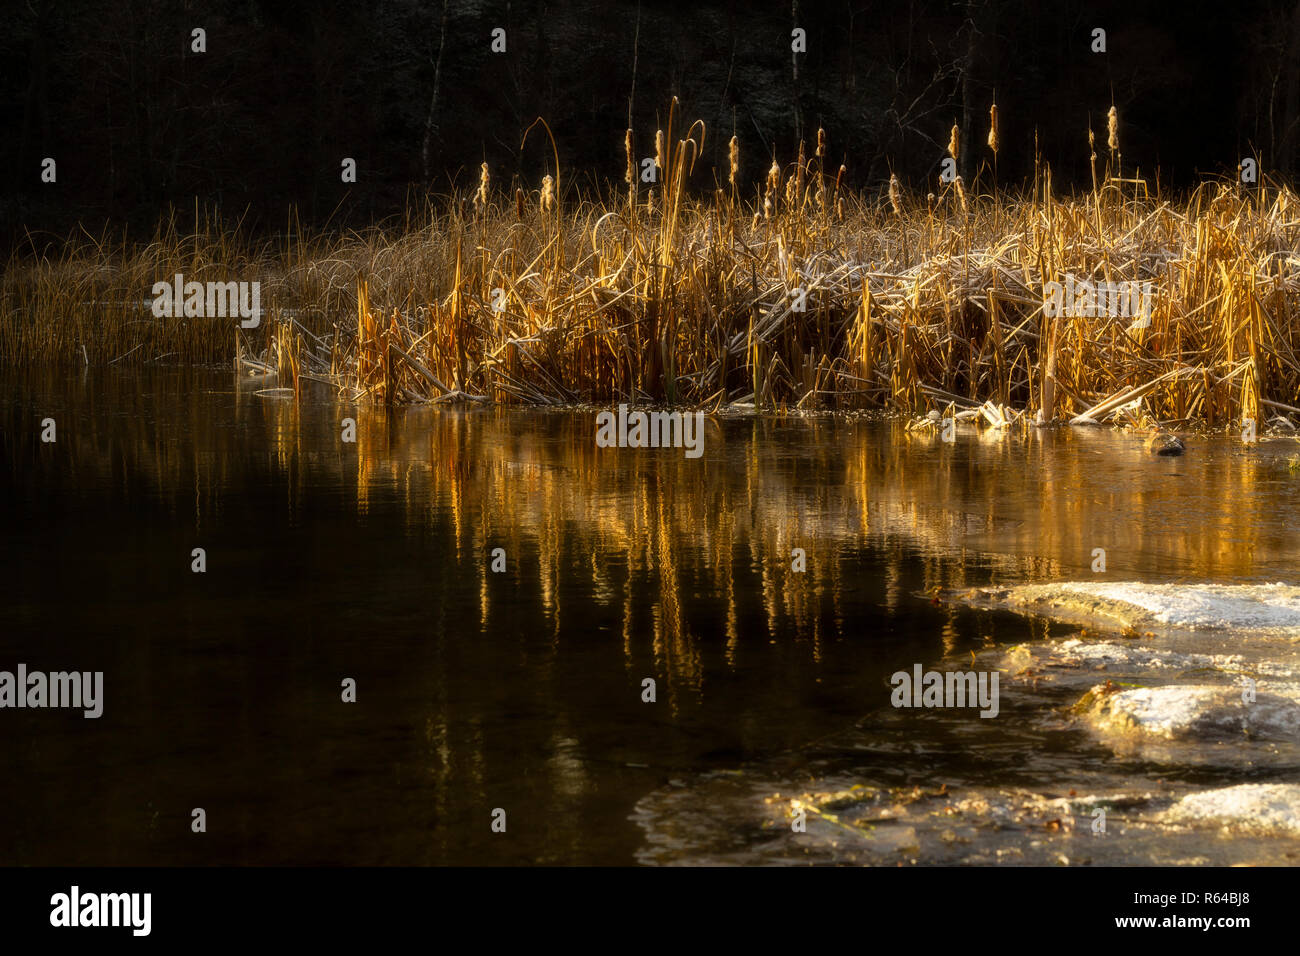 Frosty reed è riflessa in un lago e illuminato dalla luce dorata di sunrise. Una piccola quantità di immagini sfocate, sognante, sentire. Orizzontale. Foto Stock